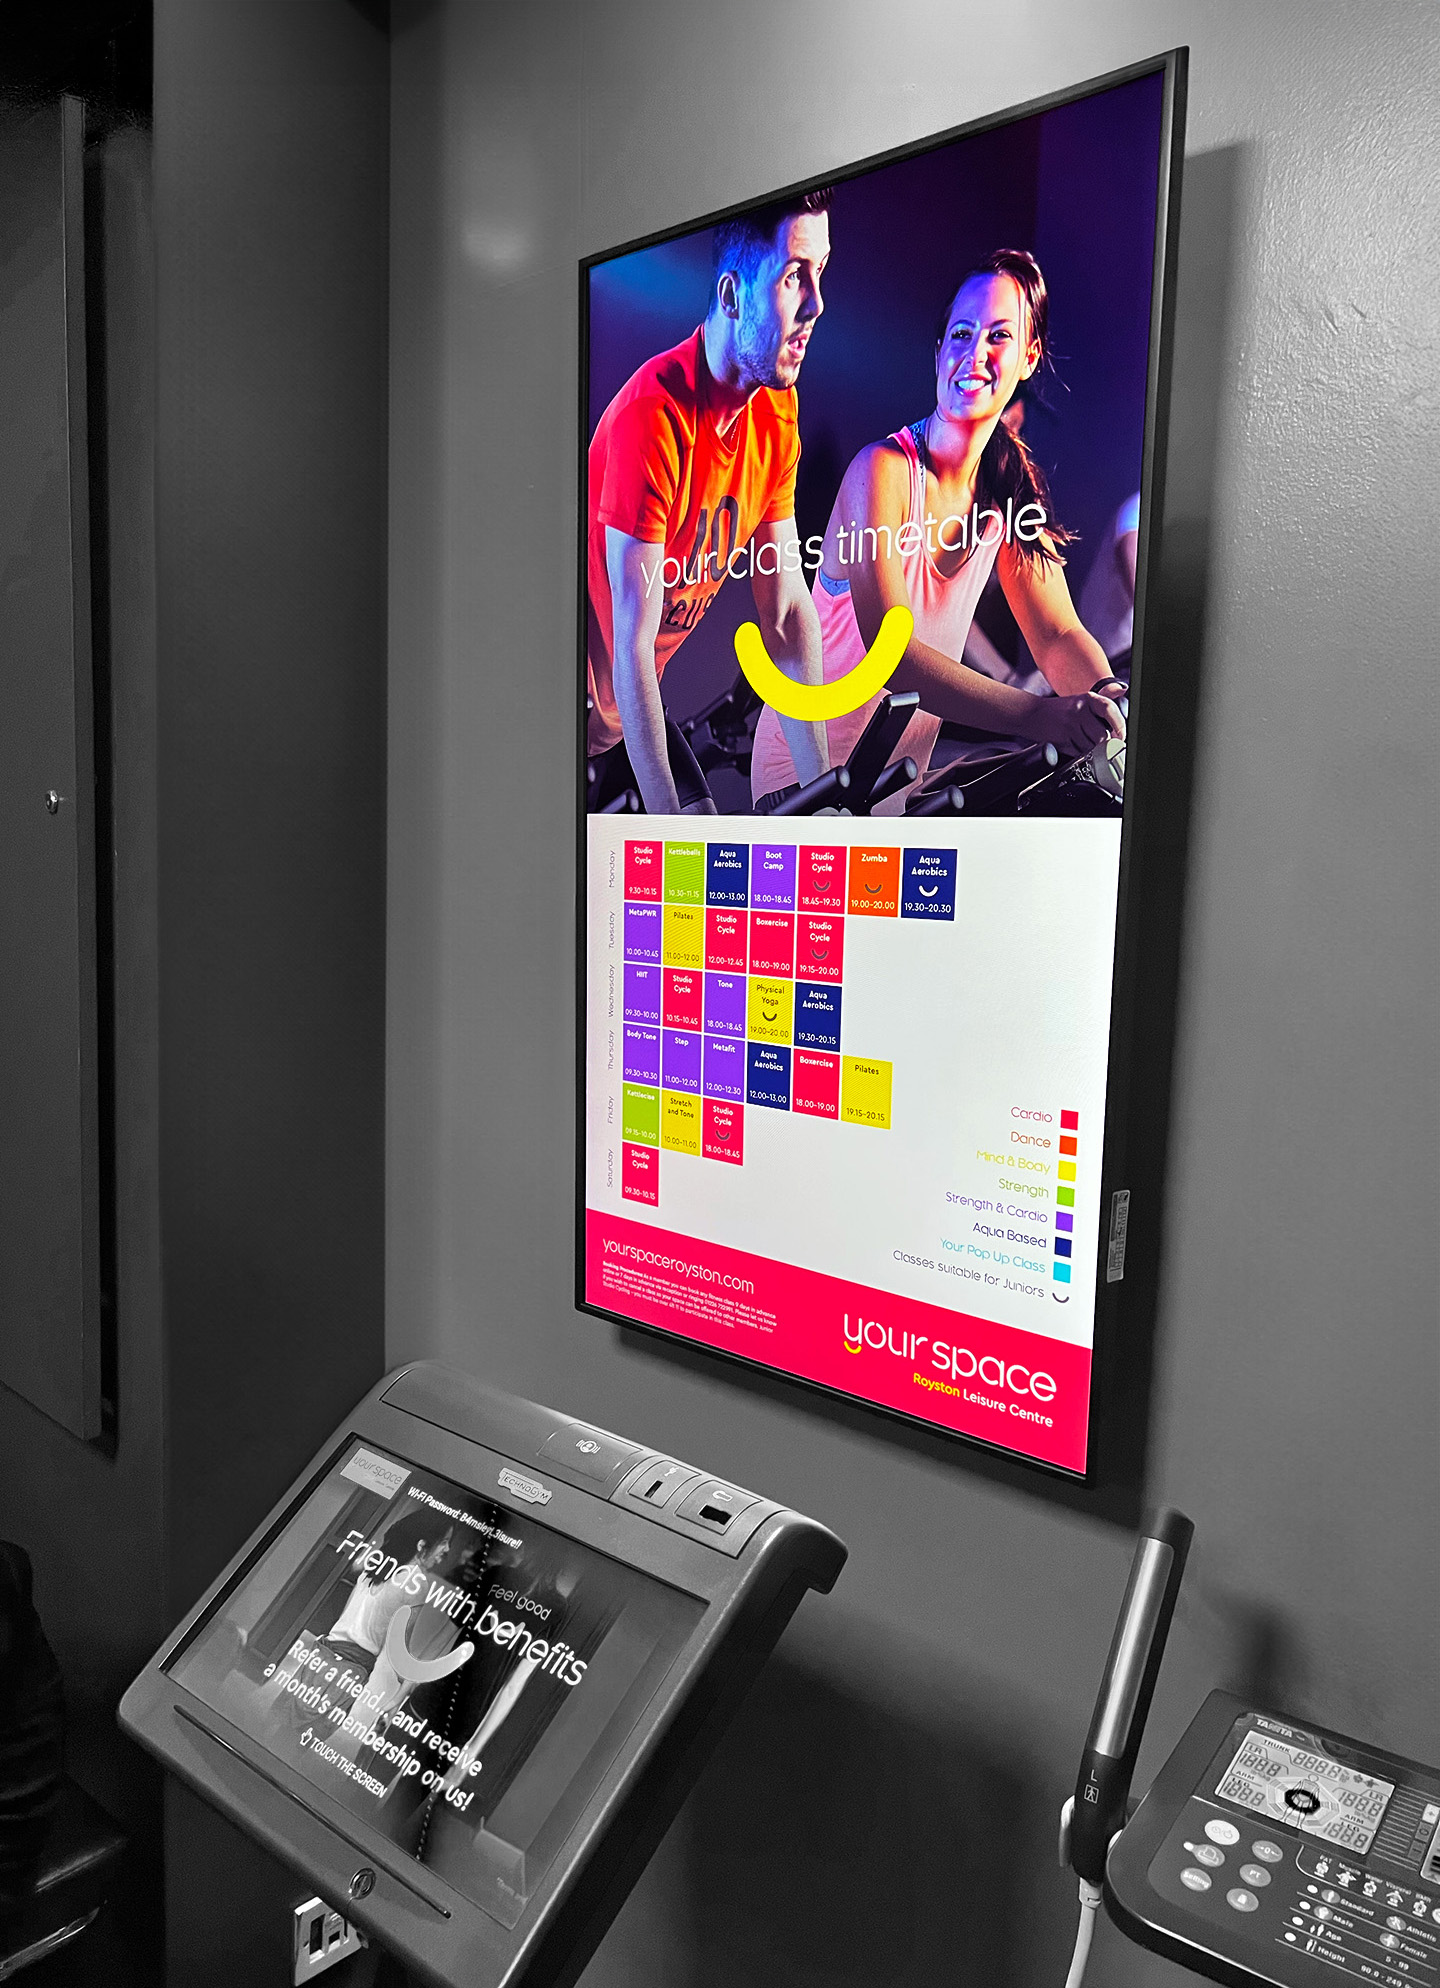 embed signage digital signage software - barnsley premier leisure BPL - portrait timetable screen gym fitness leisure digital signage